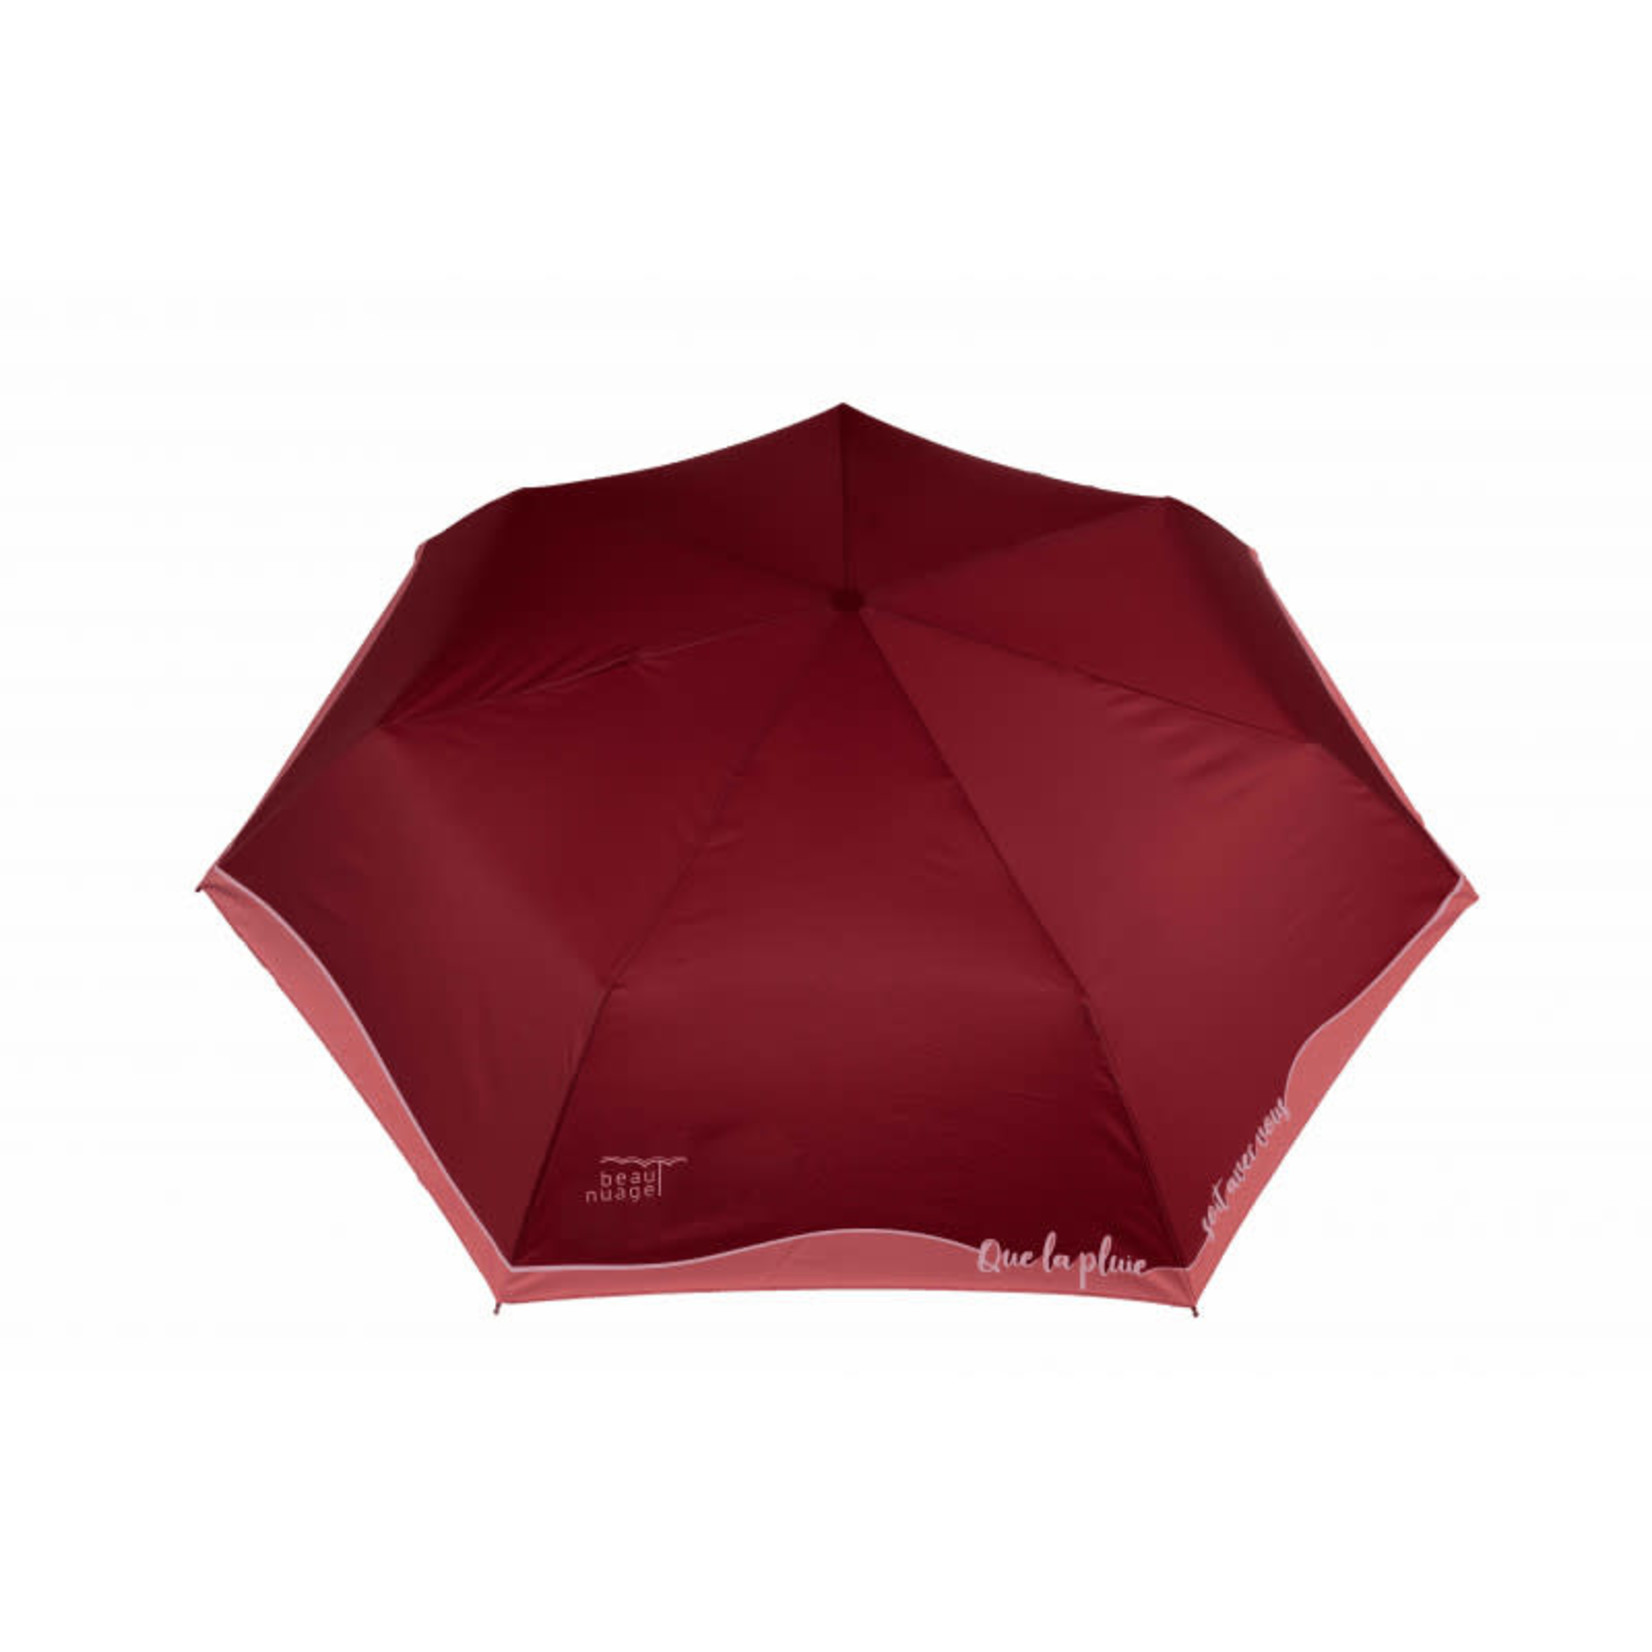 Beau Nuage Beau nuage – Parapluie éco-responsable - L'automatique - rouge grenat